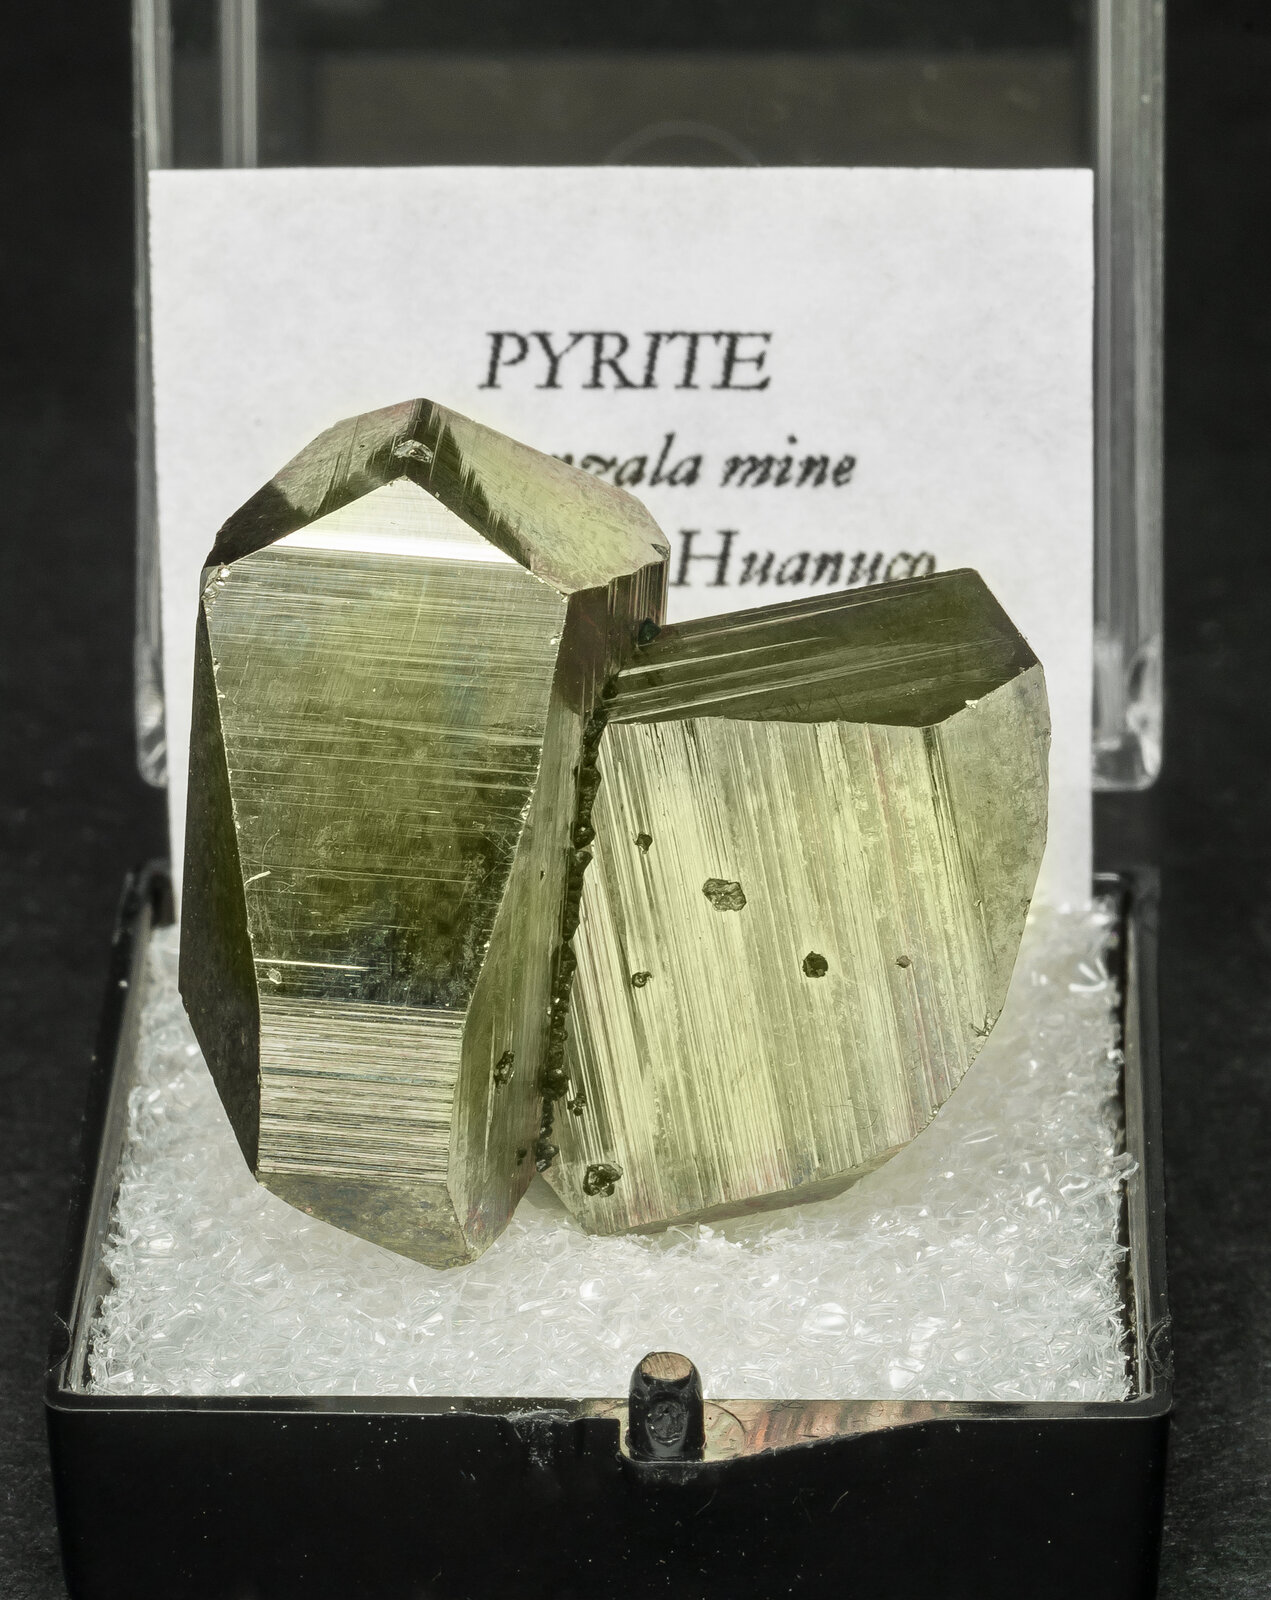 specimens/s_imagesAO4/Pyrite-TBD26AO4f1.jpg